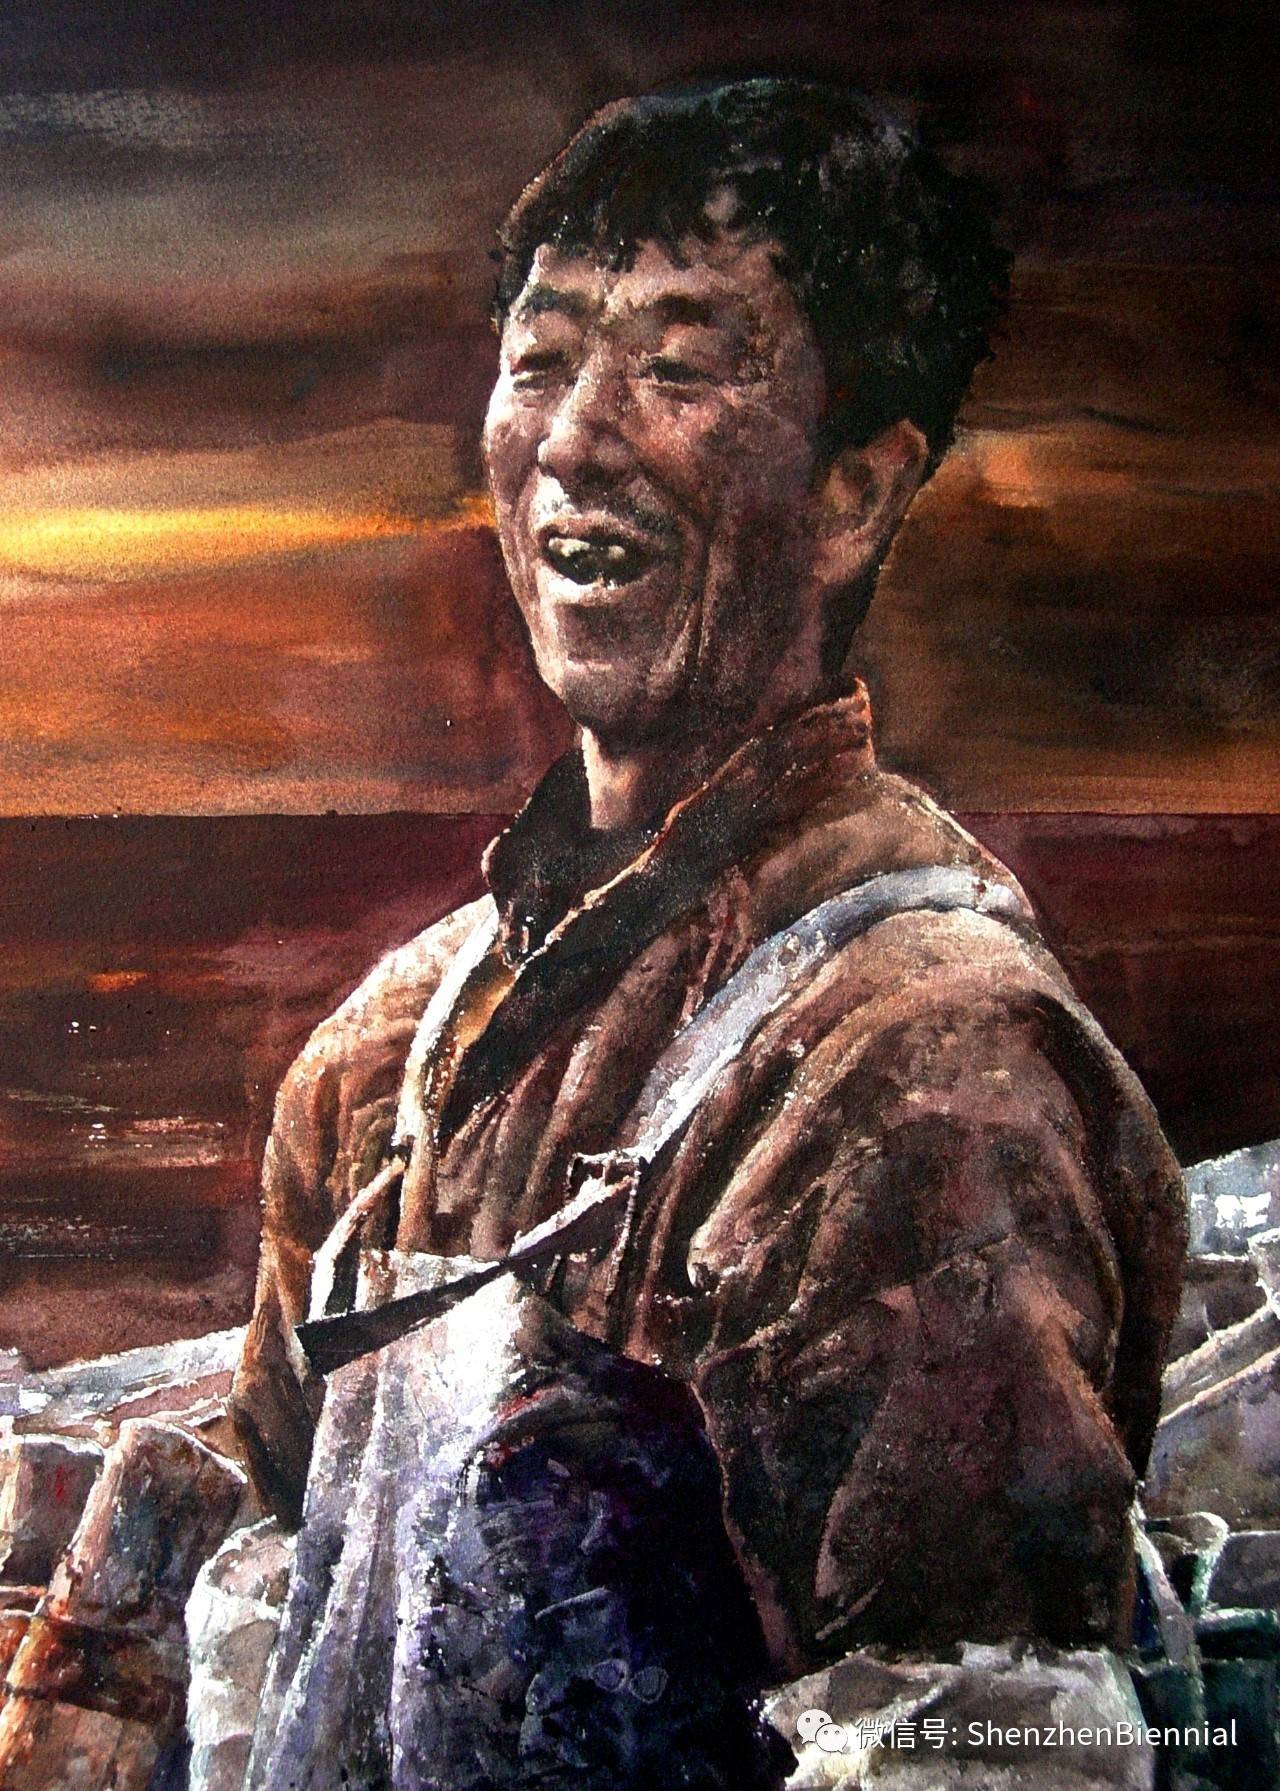 法国水彩艺术杂志专访著名画家王绍波